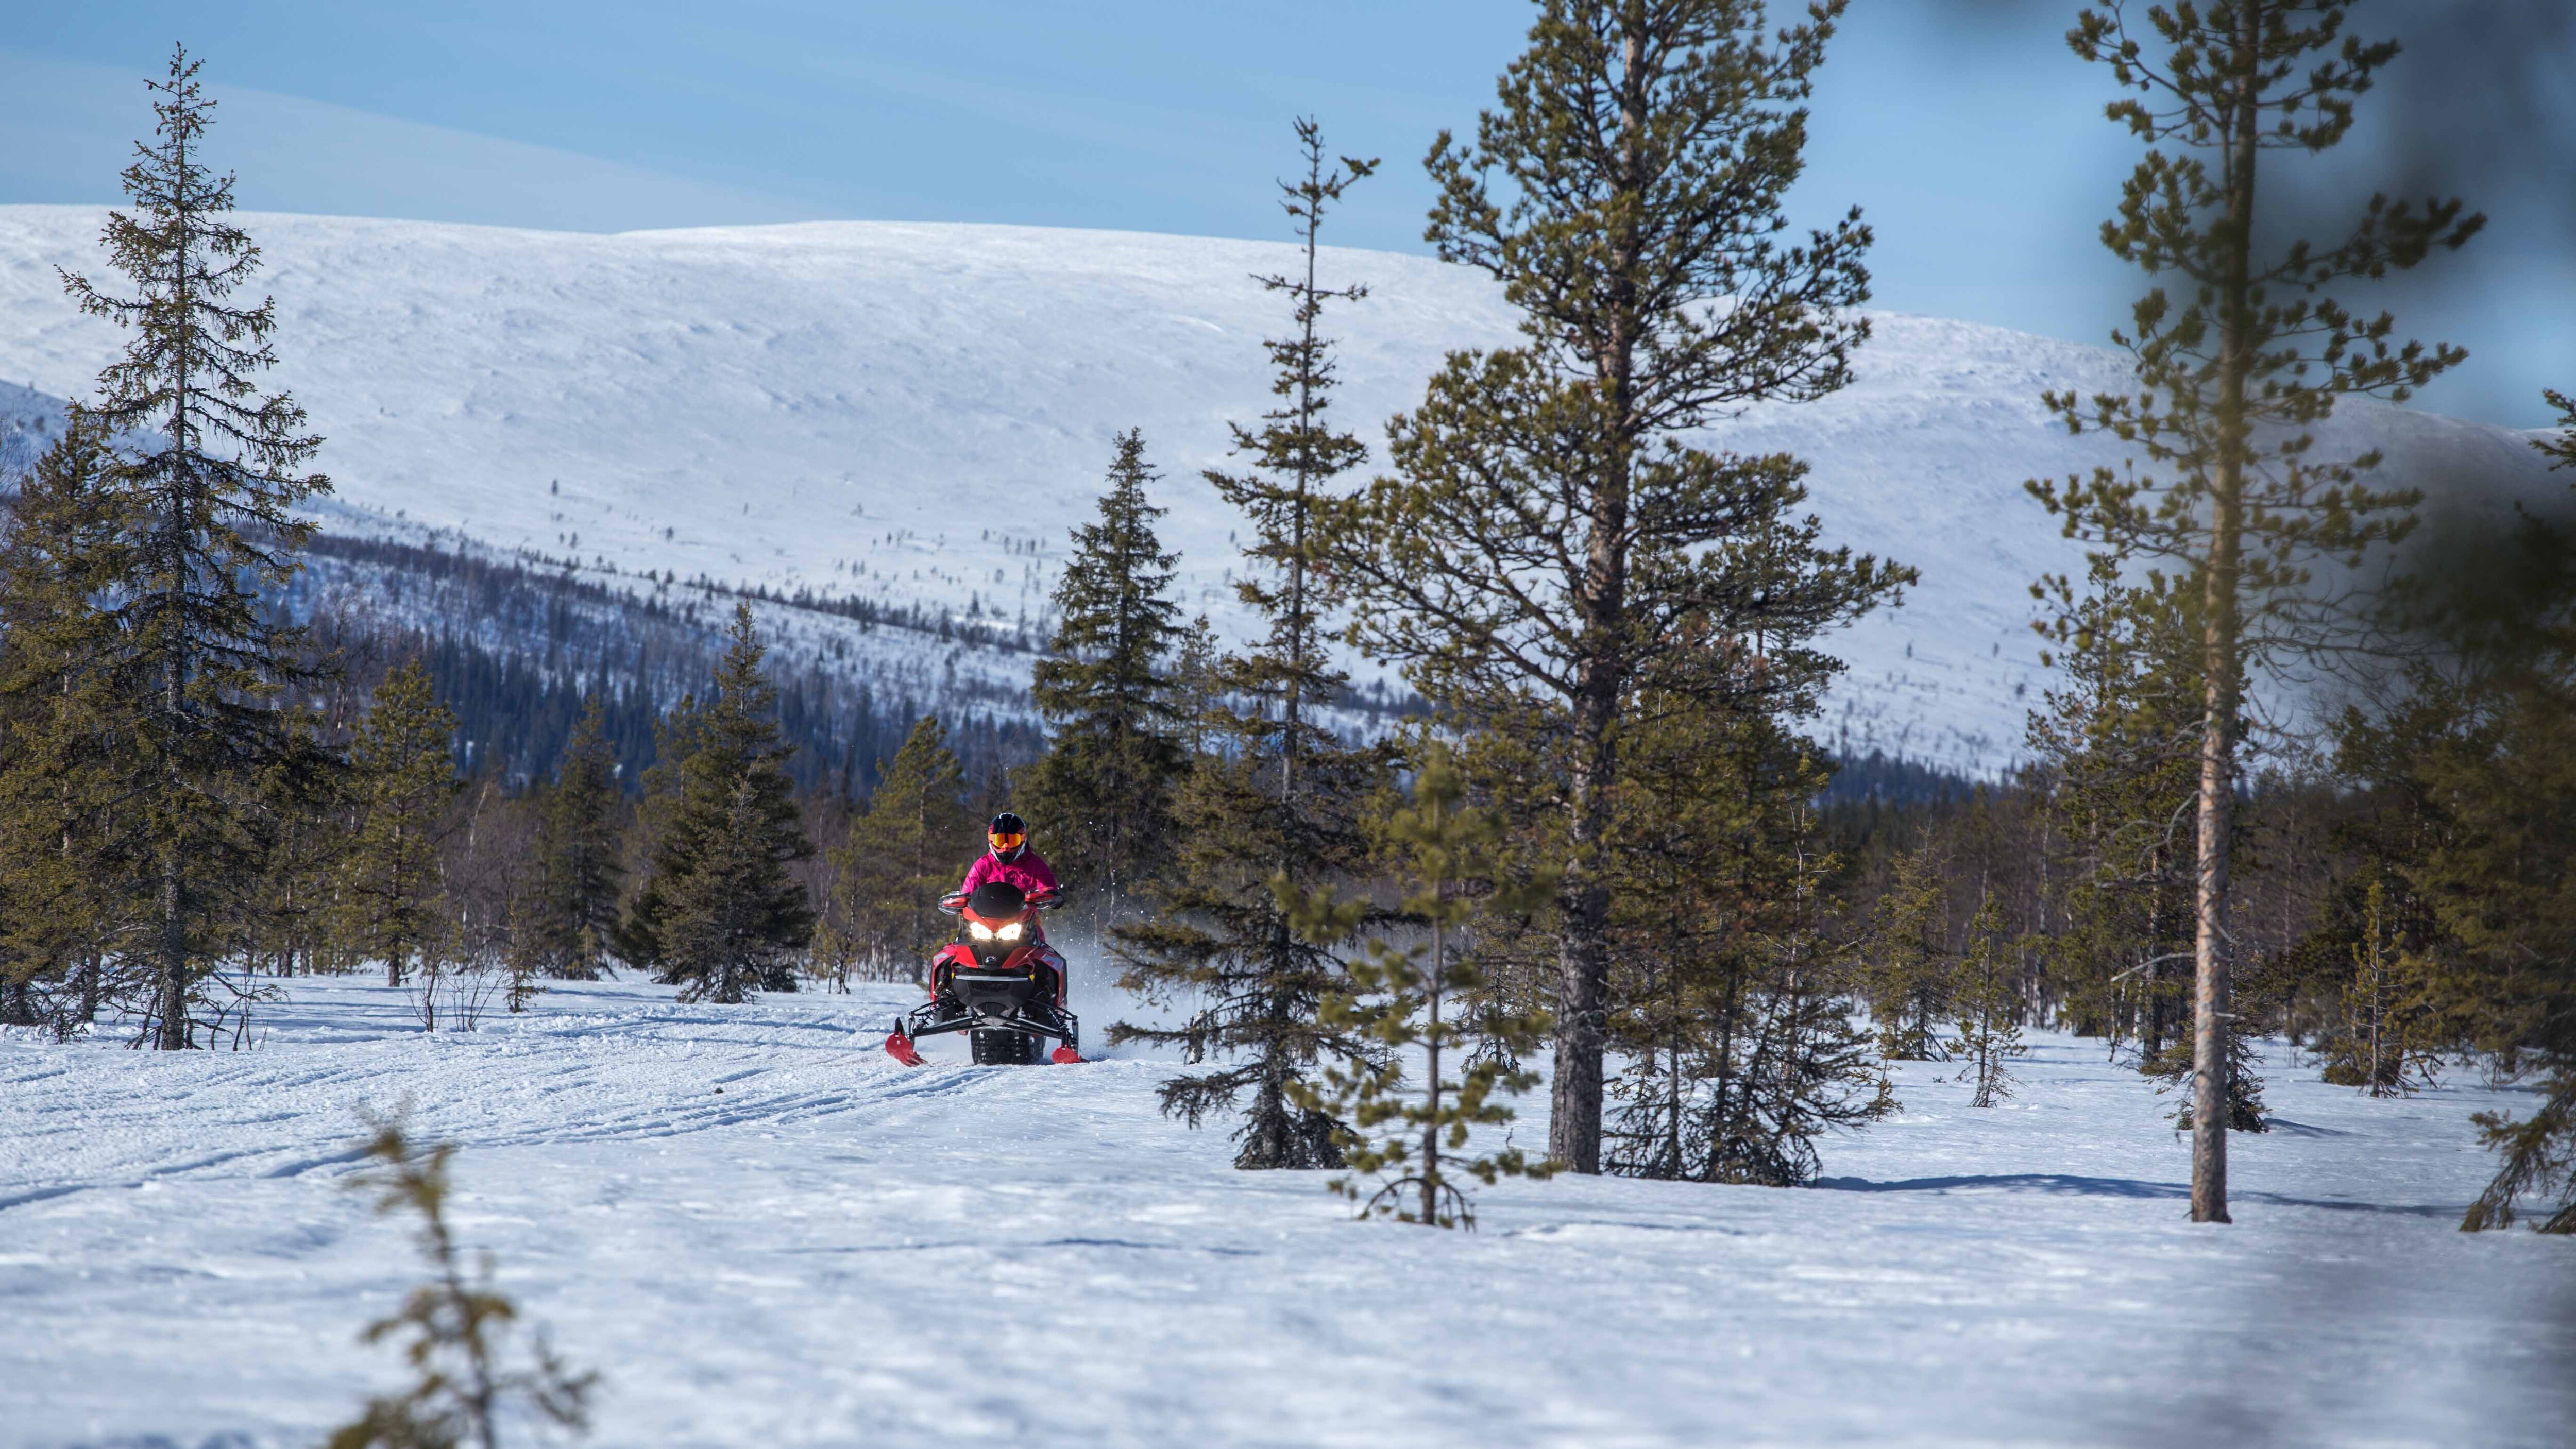 Emma Kimiläinen på snöskoterled med utsikt över fjällen i Lappland, Finland med snöskotern 2022 Lynx Rave RE 850 E-TEC